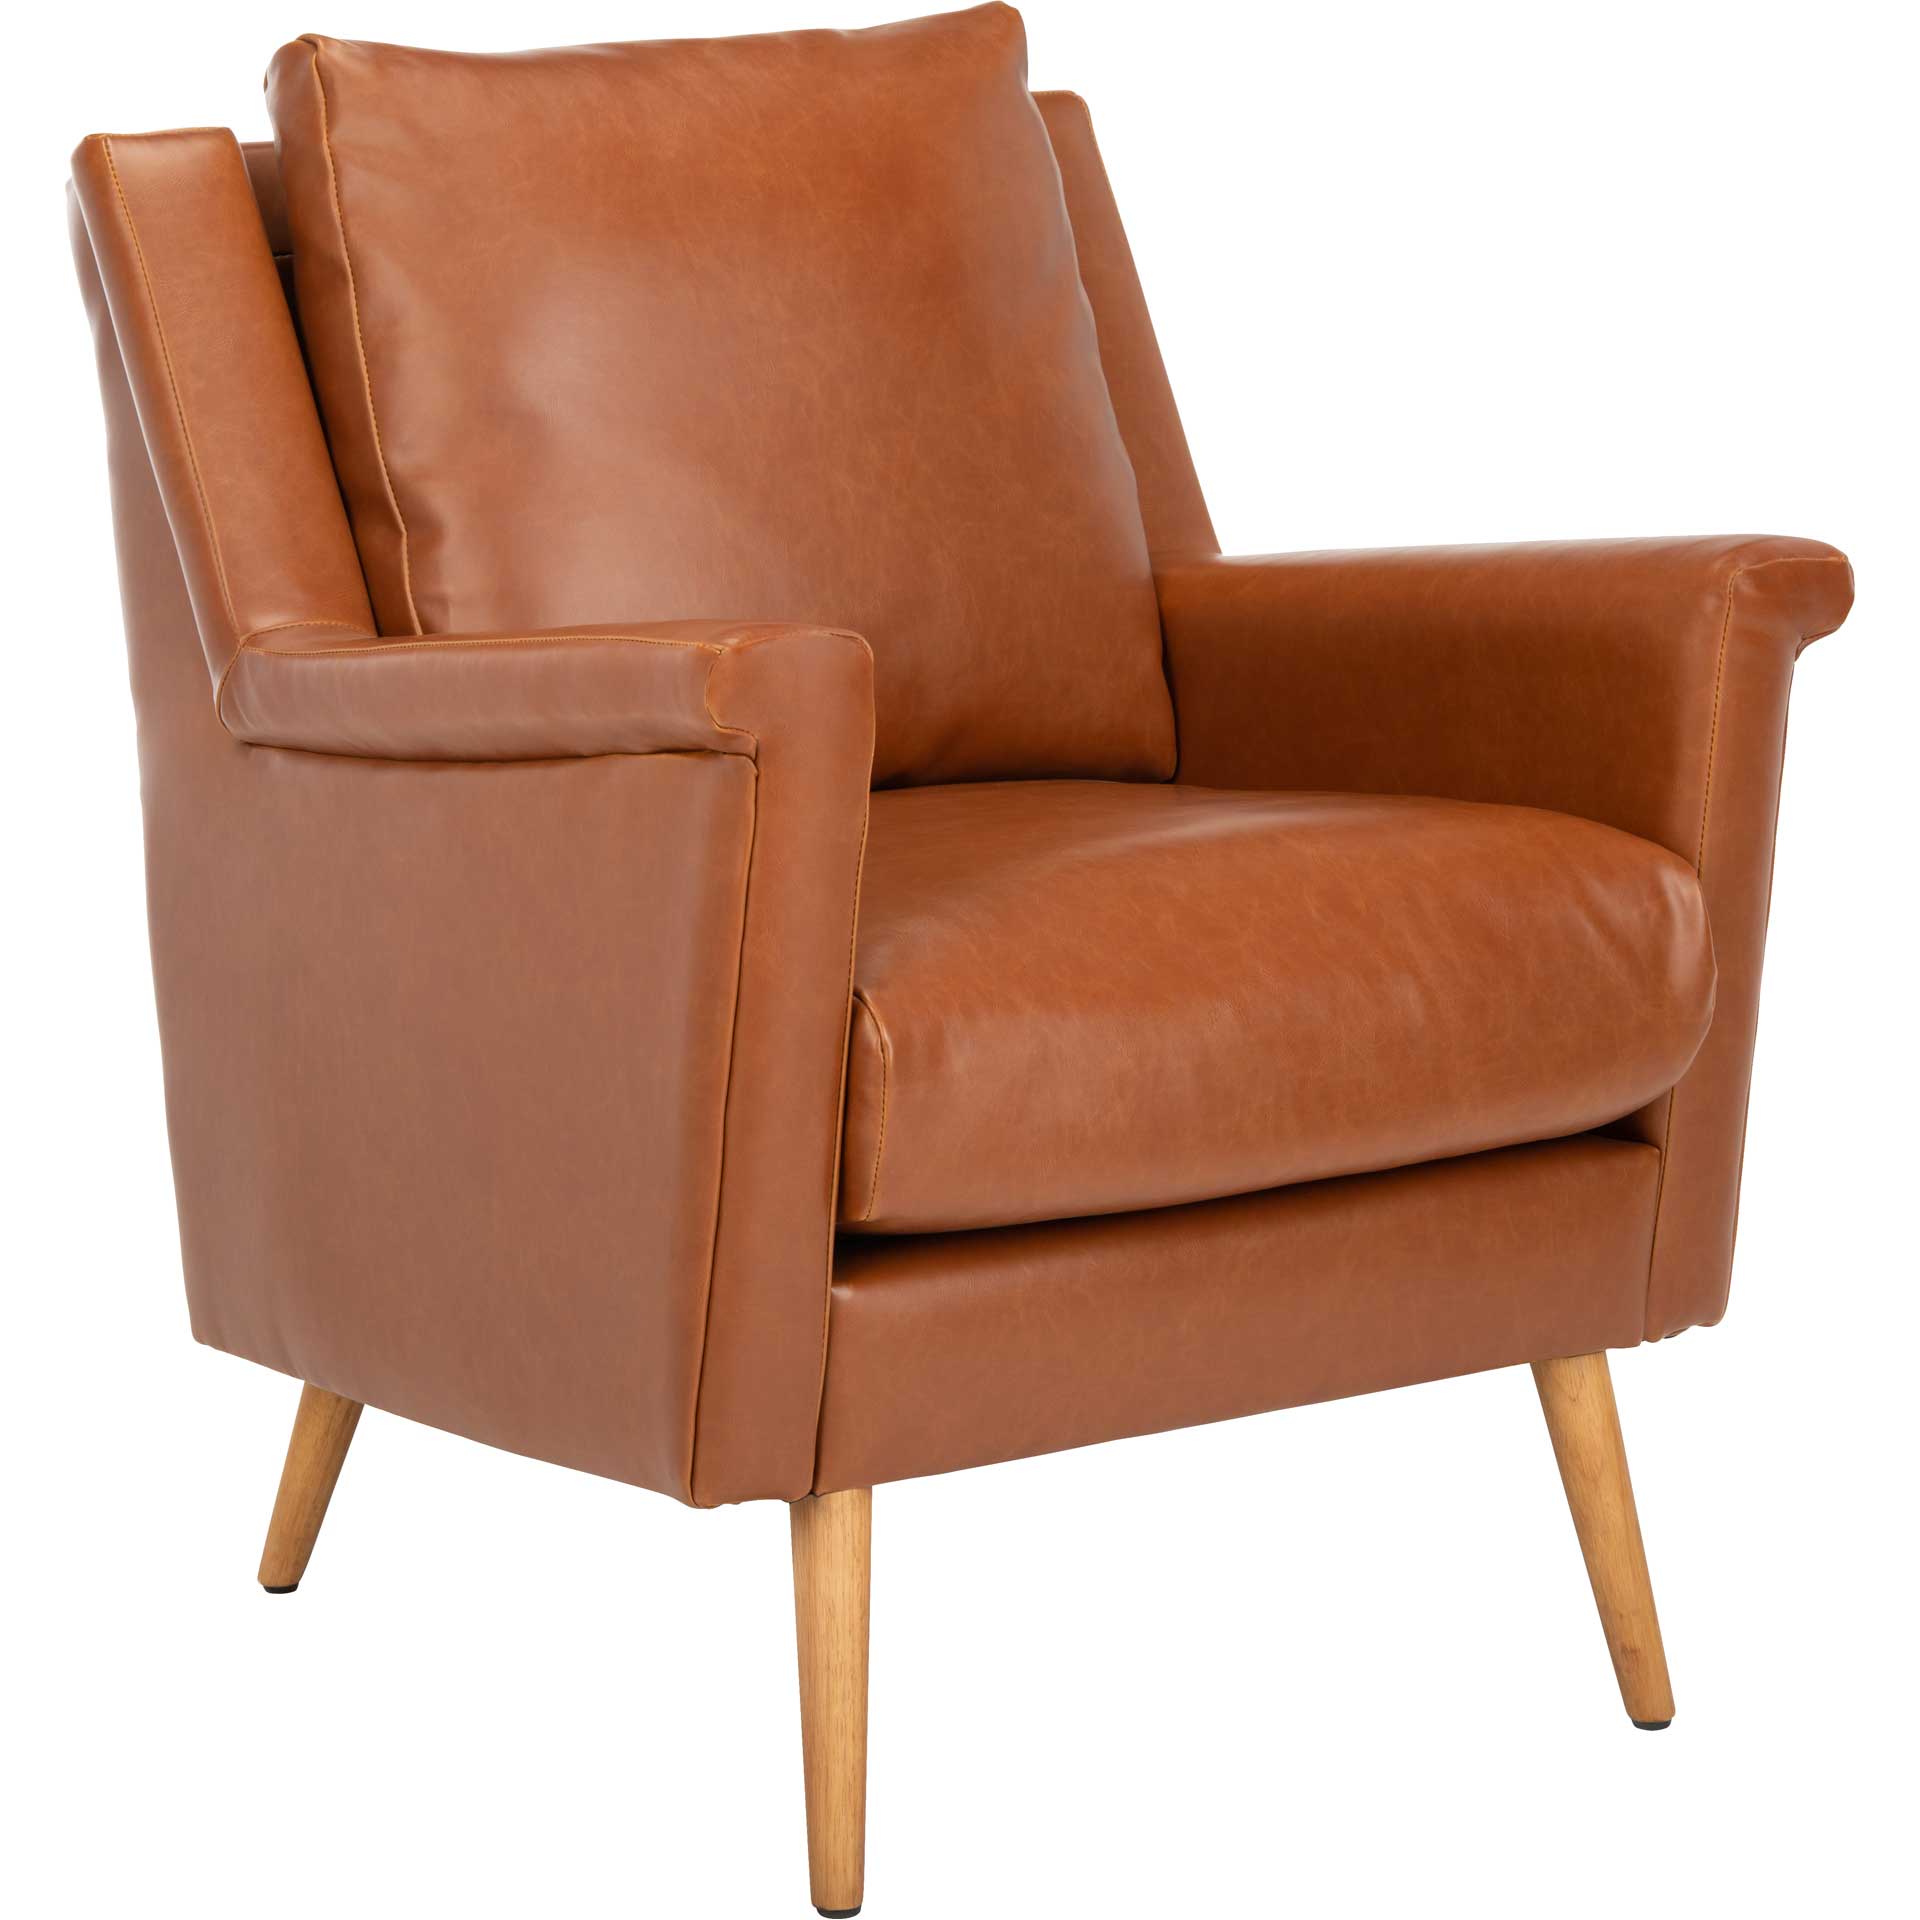 Aspen Mid Century Arm Chair Cognac/Natural